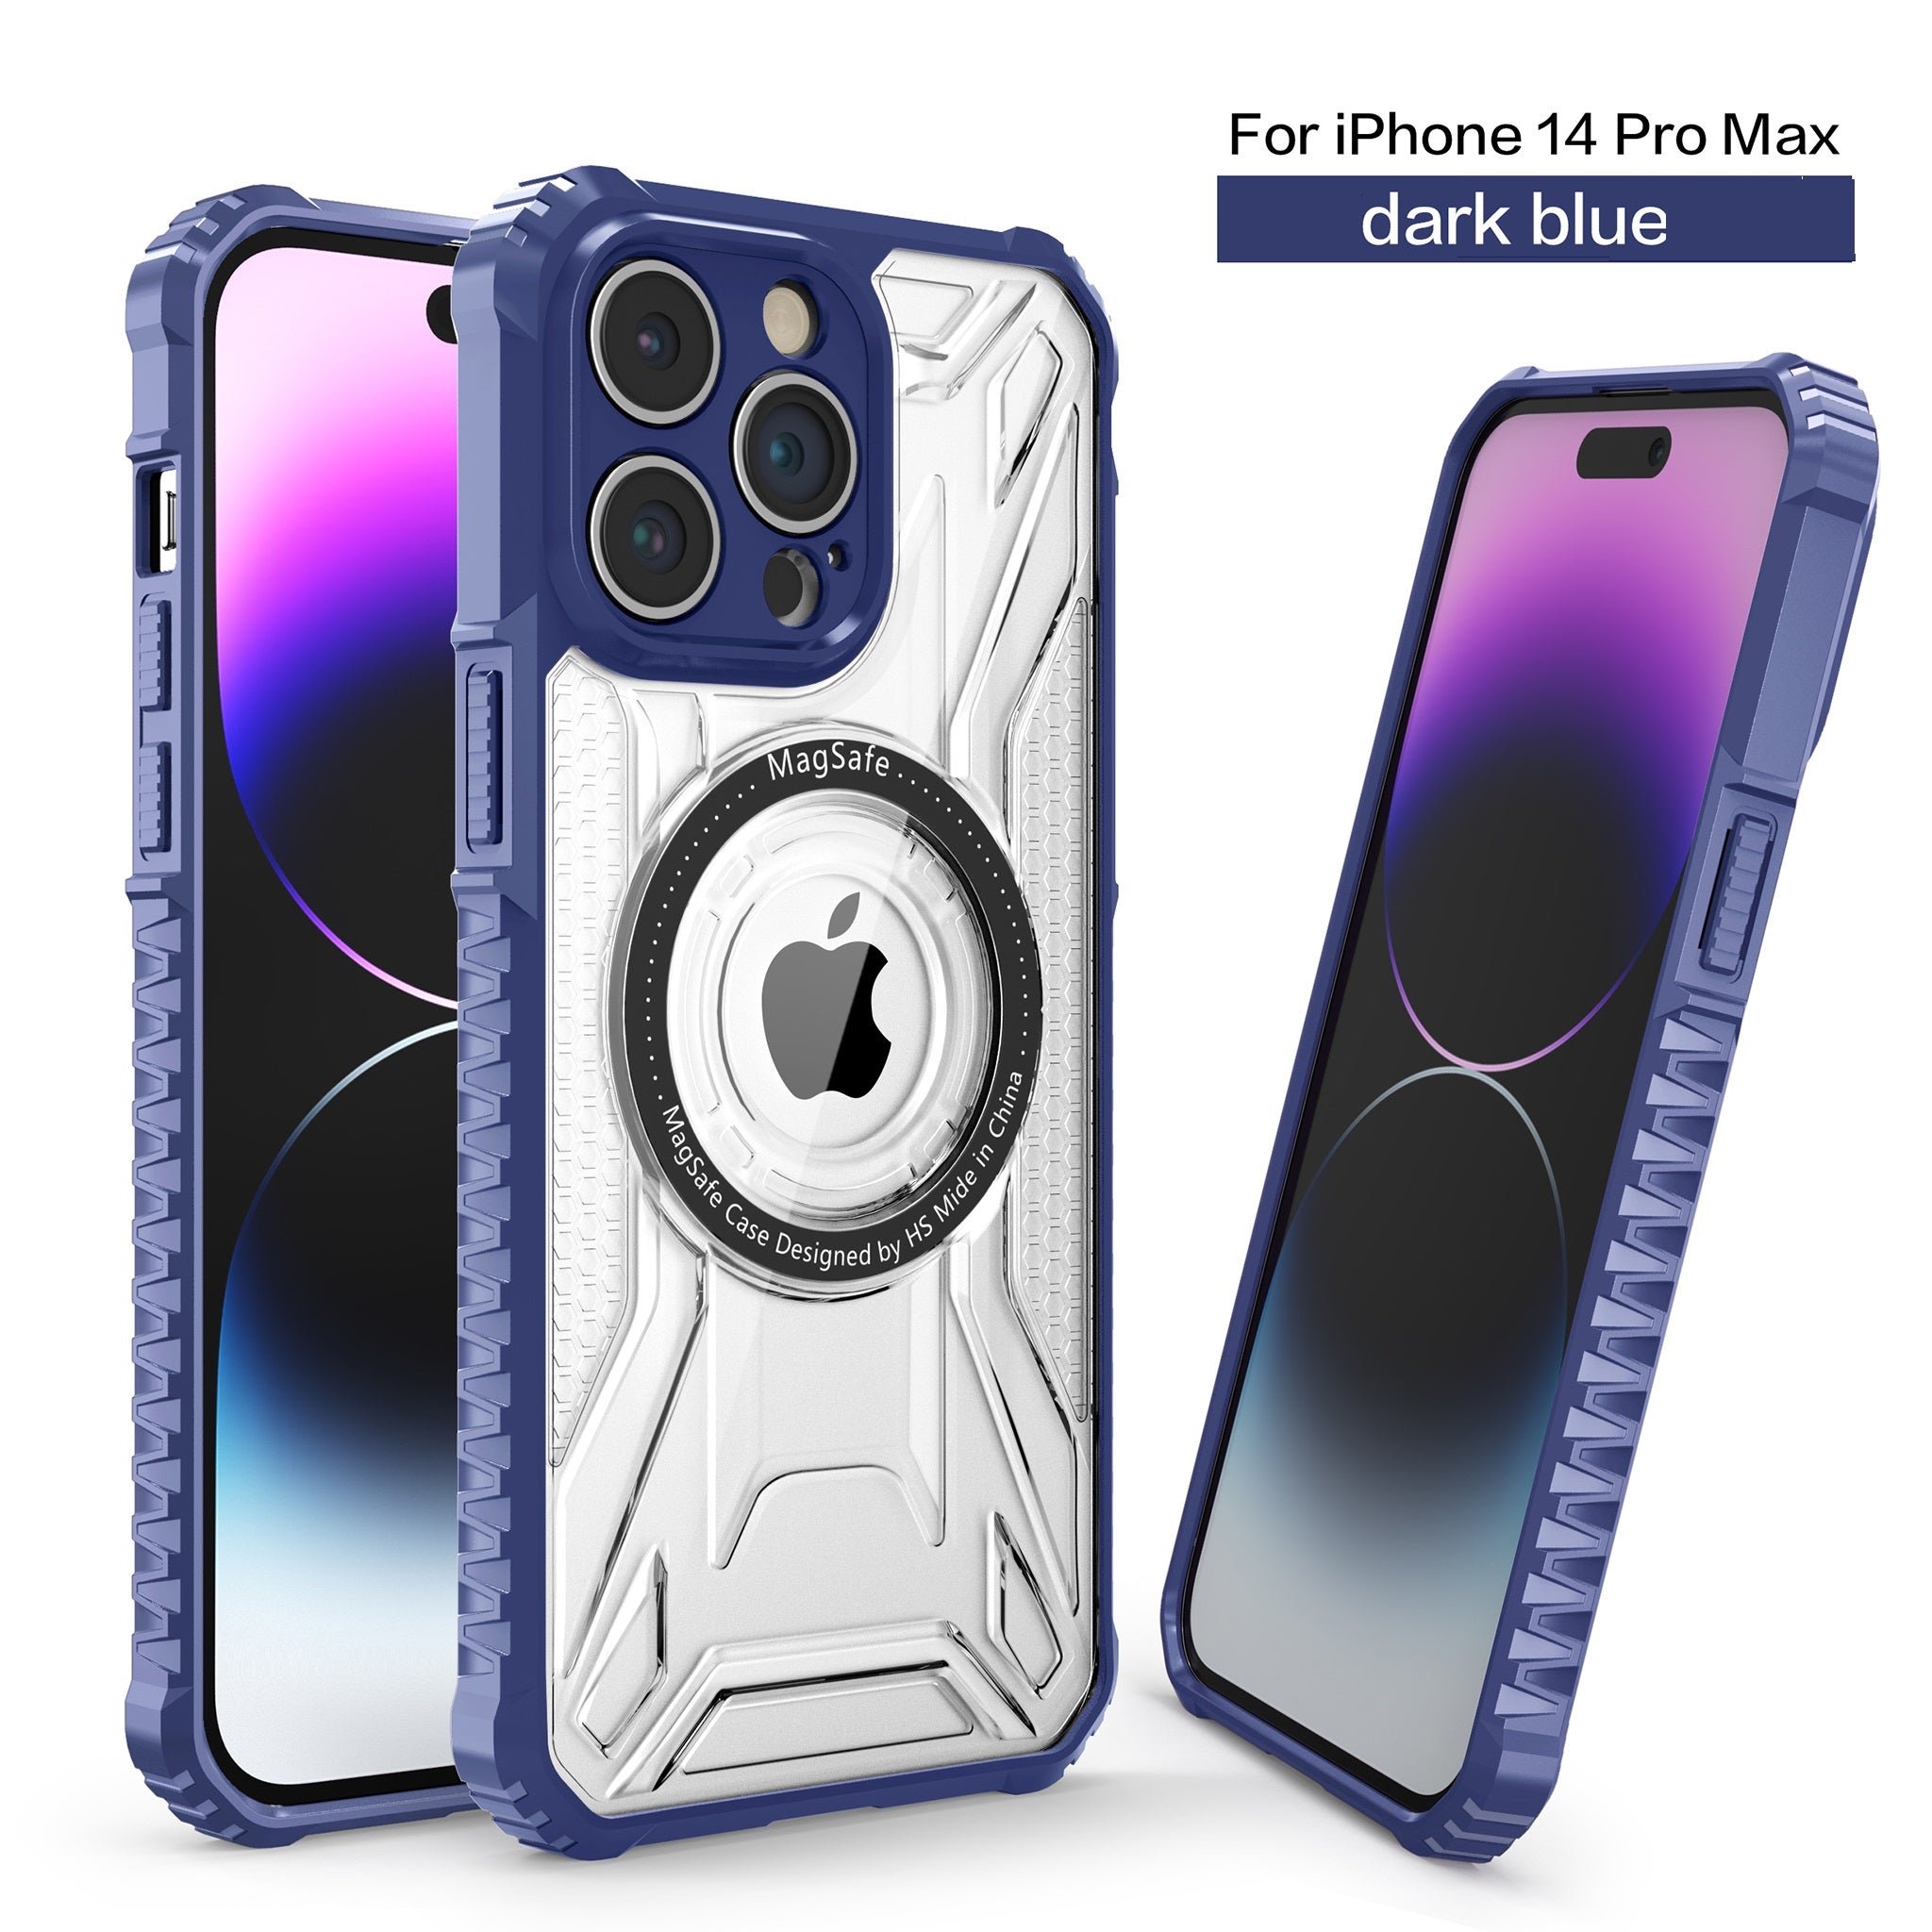 MC9 Design Case for iPhone 14 Pro